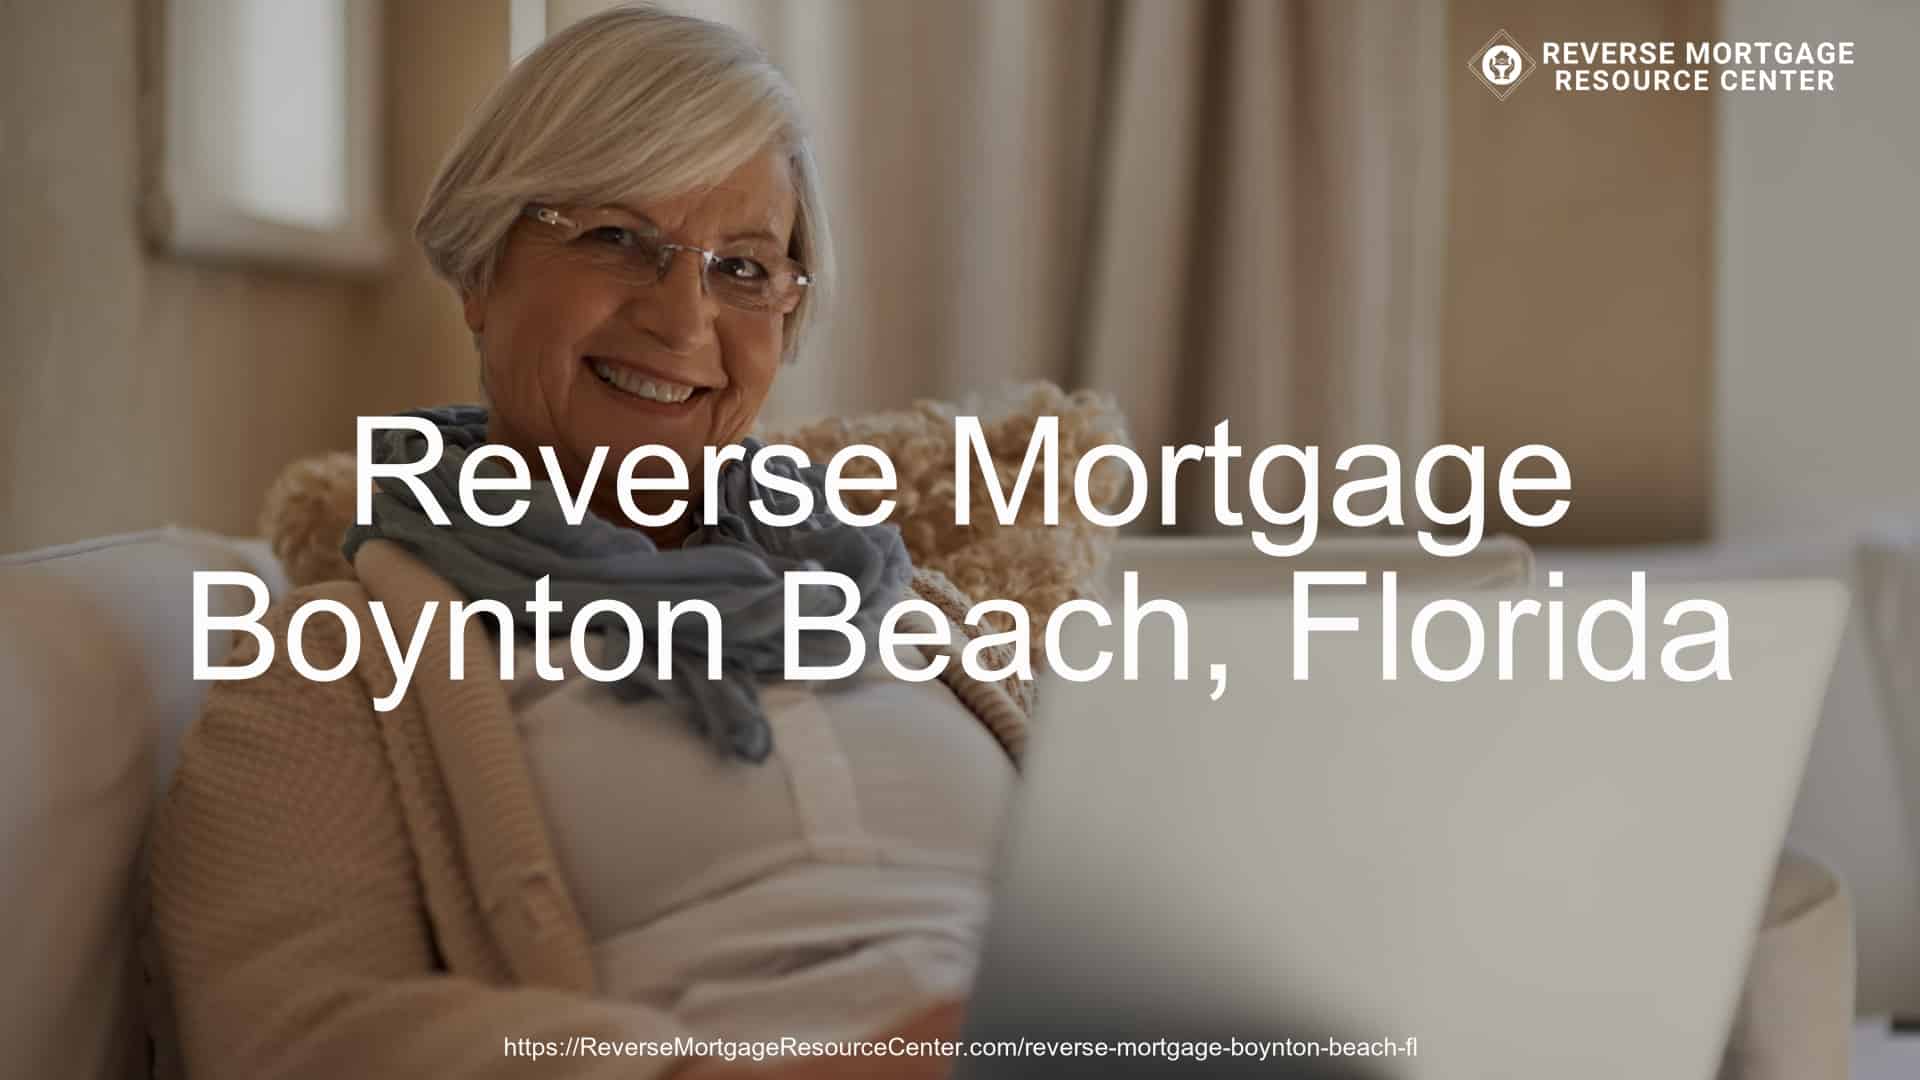 Reverse Mortgage Loans in Boynton Beach Florida